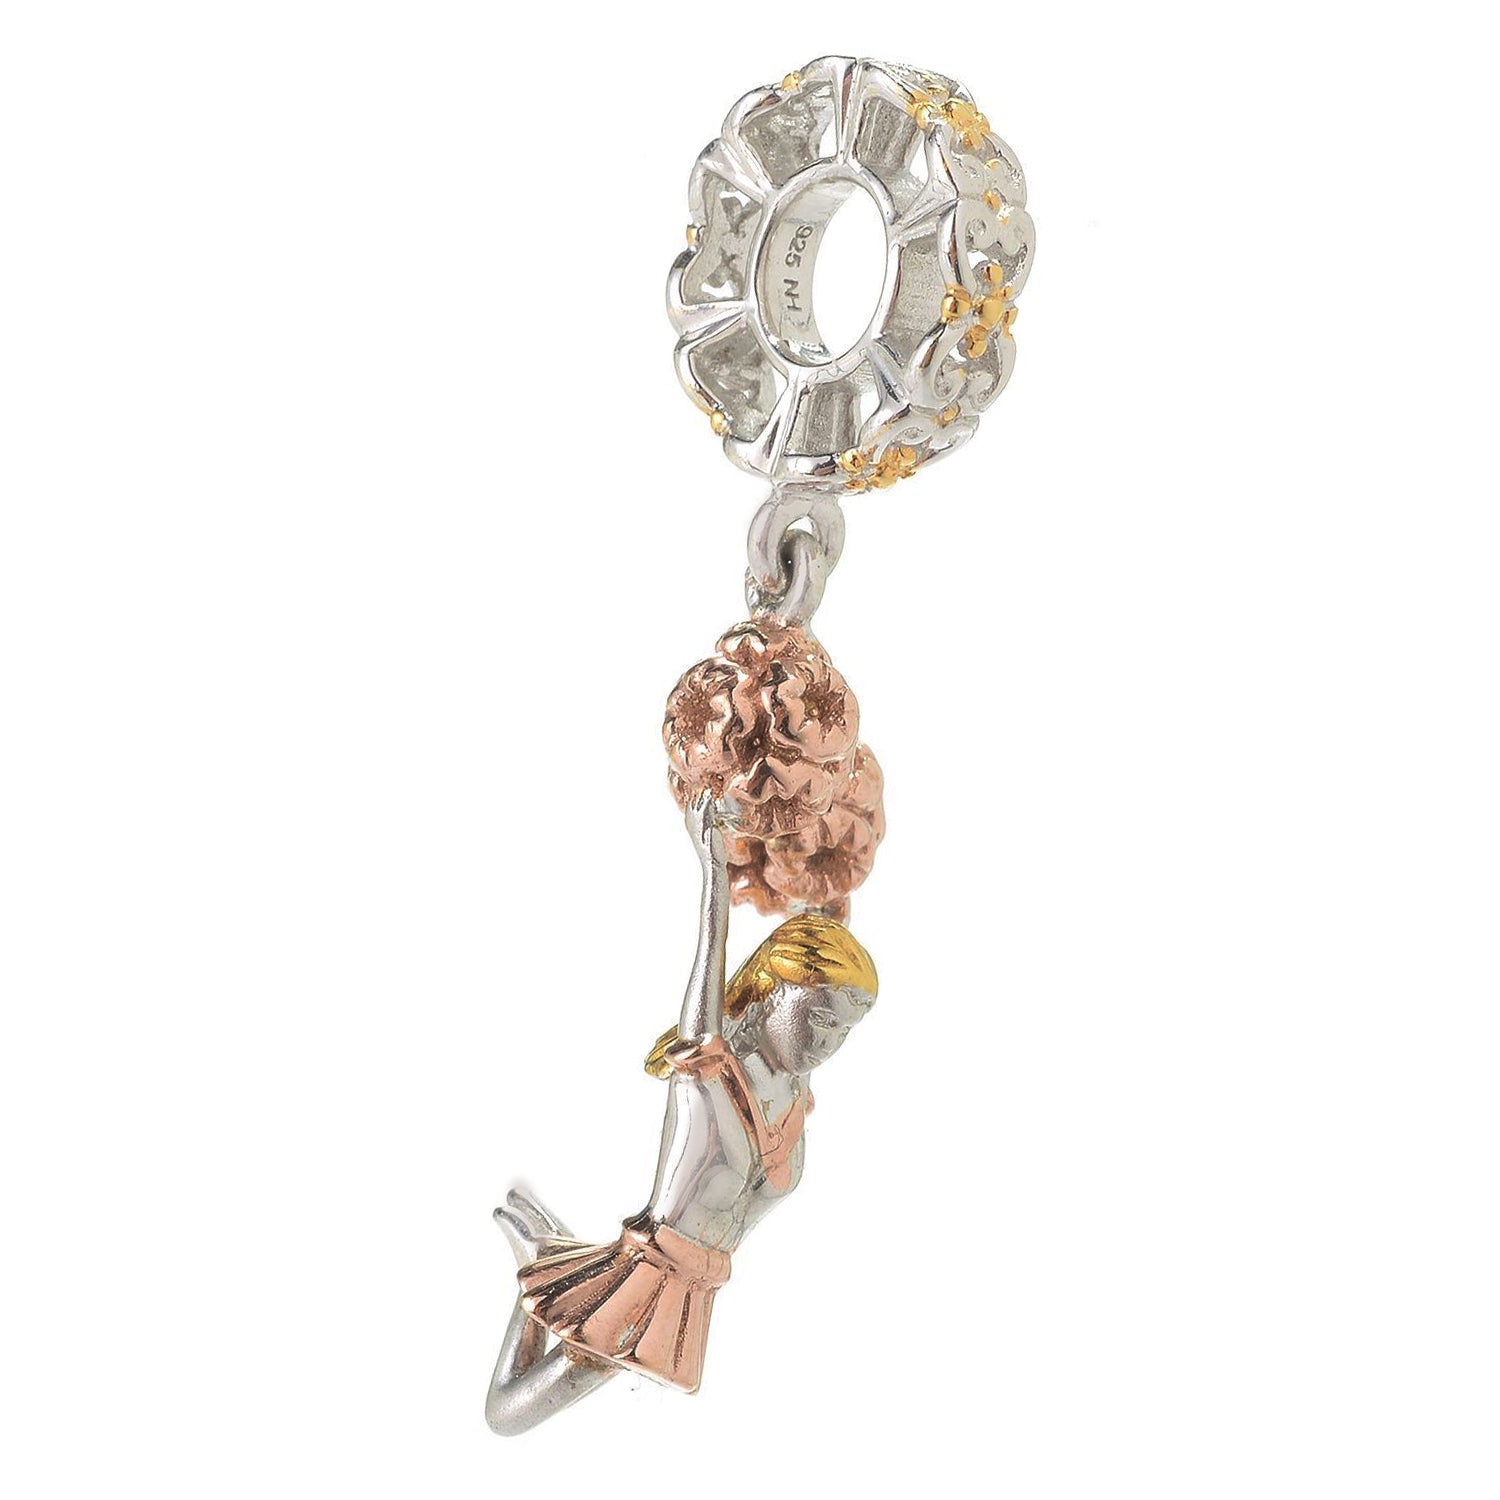 Gems en Vogue Tri-Color Cheerleader Drop Charm Pendant (Includes Chain)